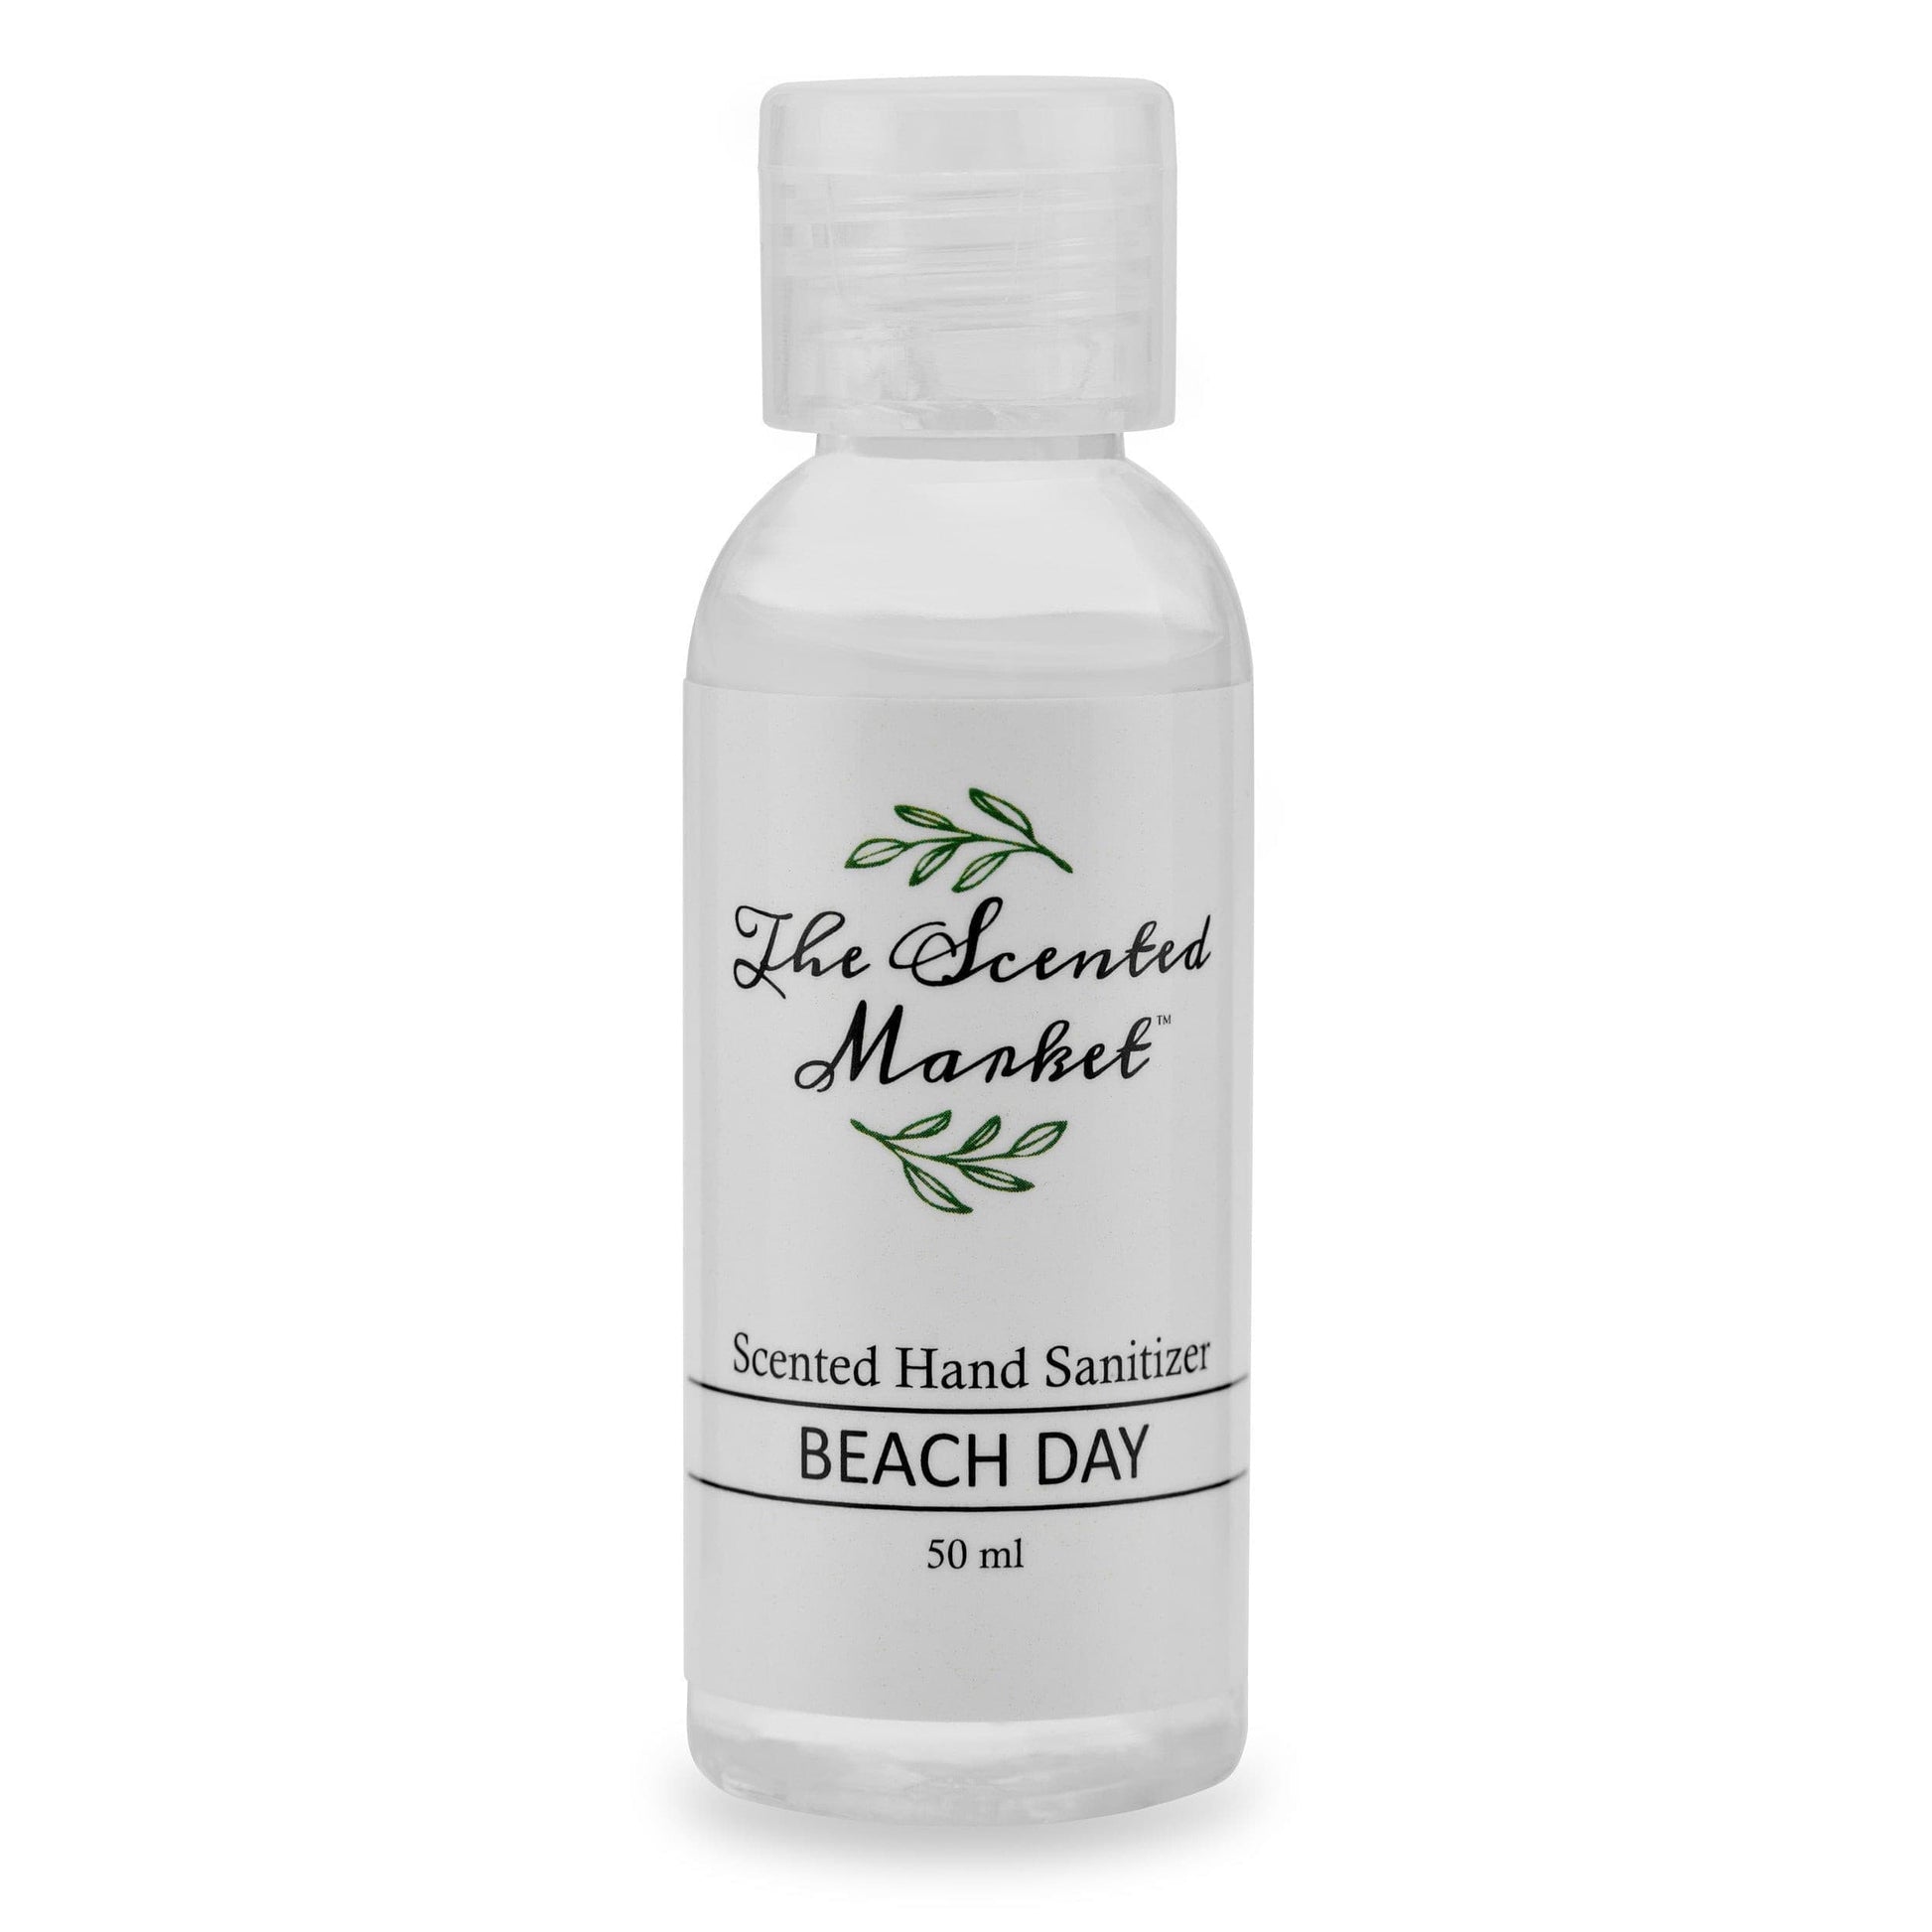 BEACH DAY Hand Sanitizer